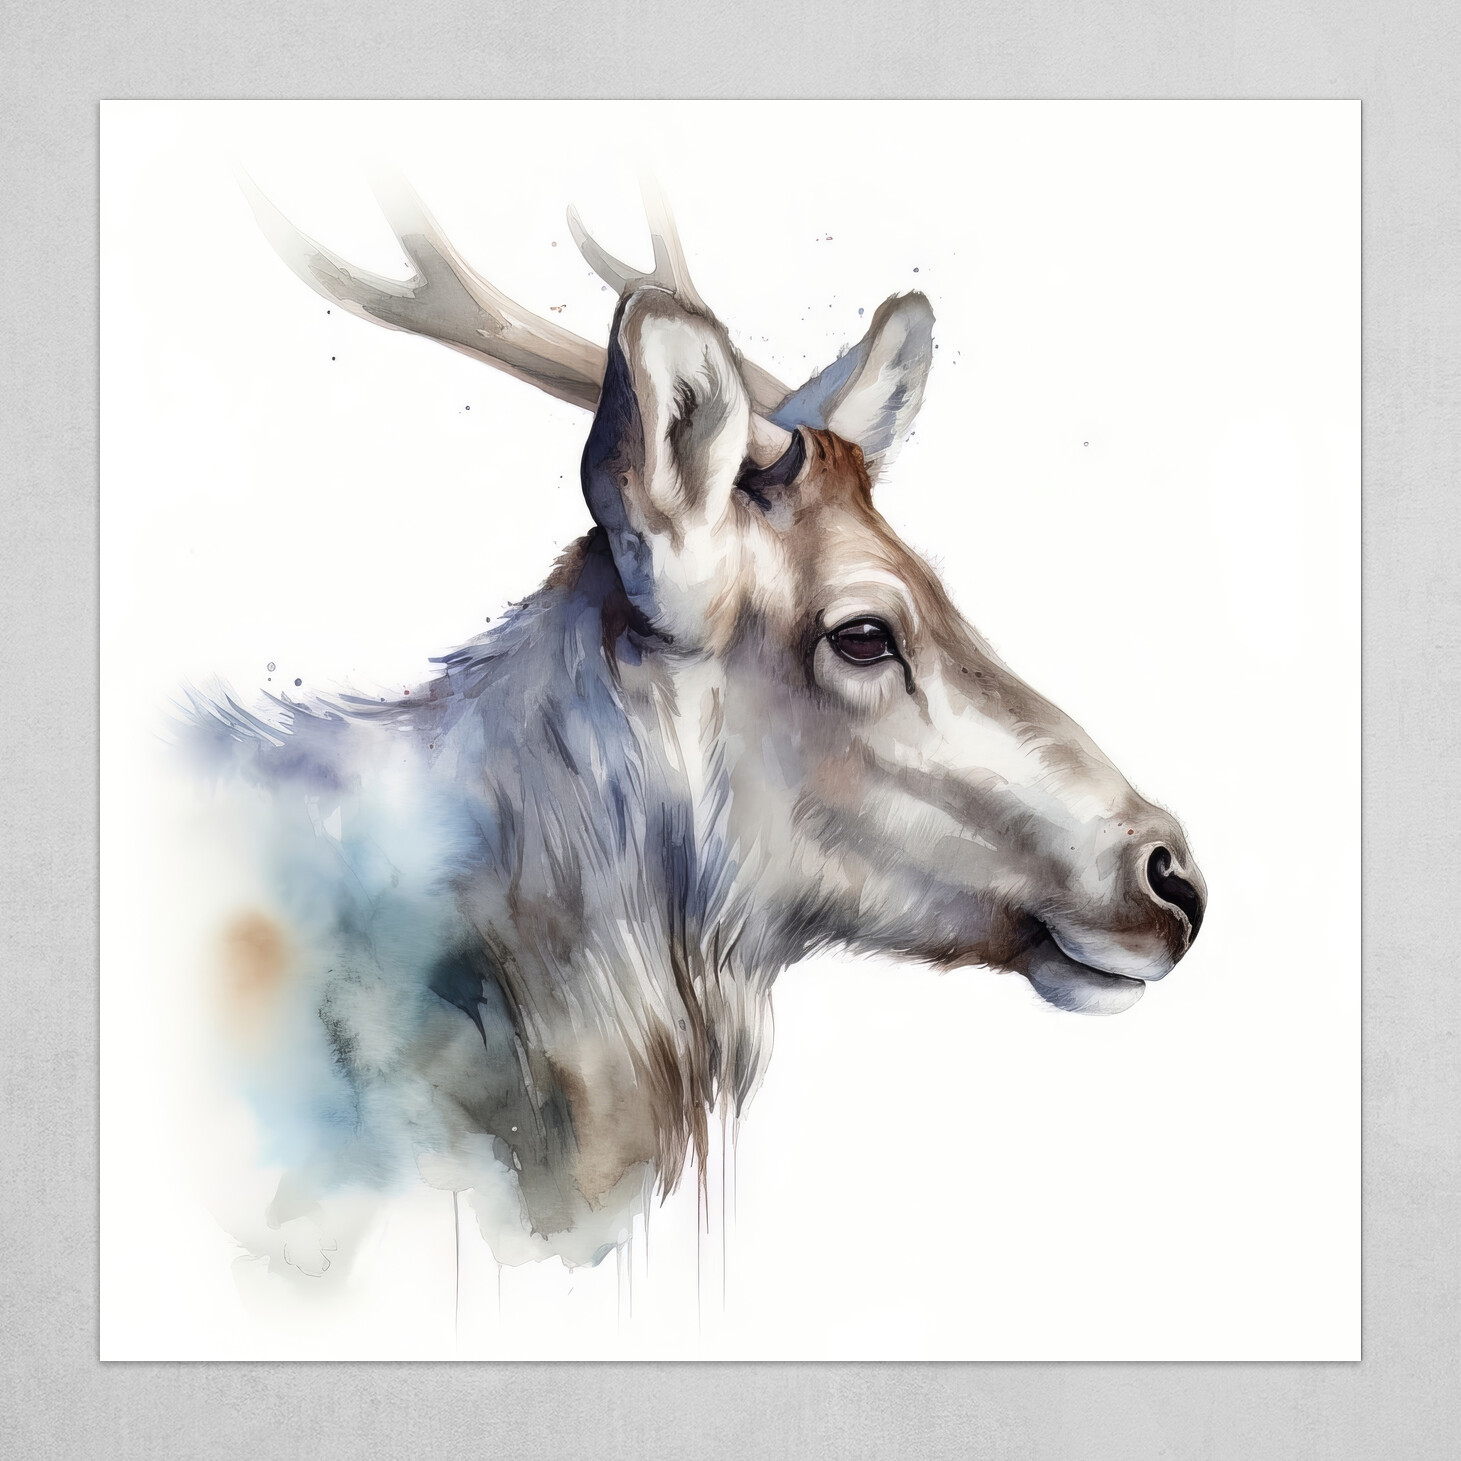 Caribou Animal Portrait Watercolor Painting by Francois Ringuette